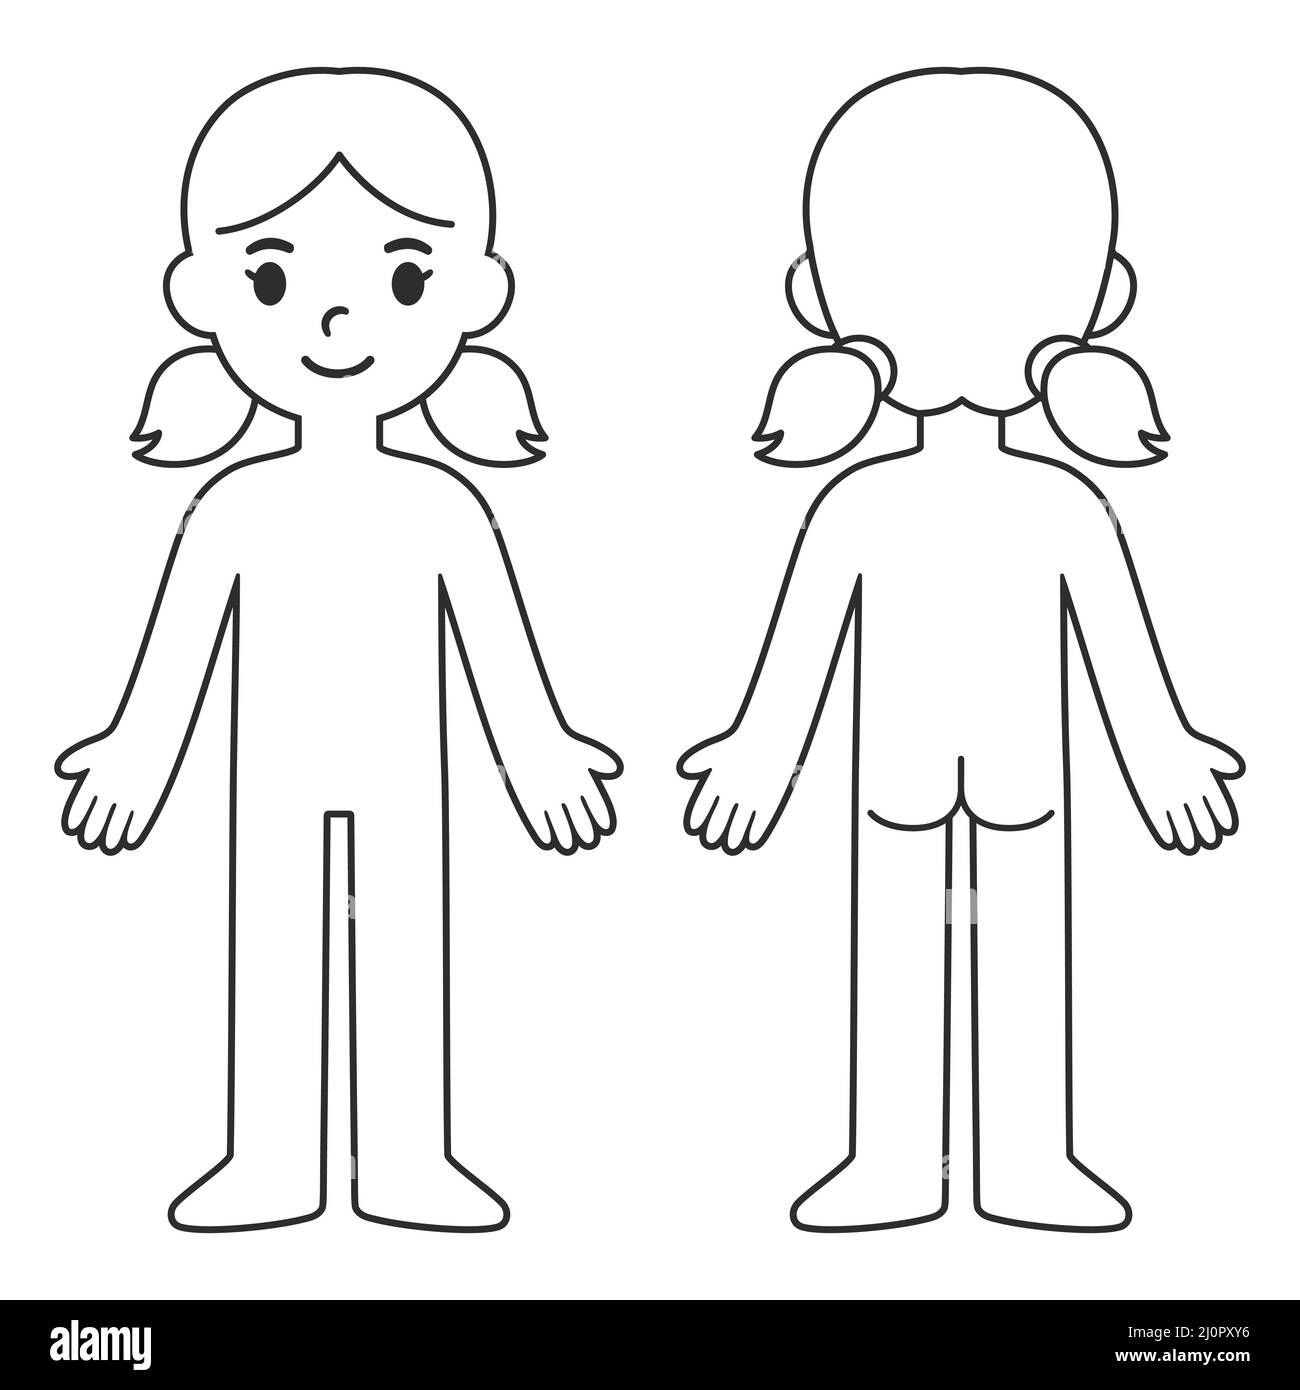 Vettori e Illustrazioni di Corpo umano bambini con download gratuito